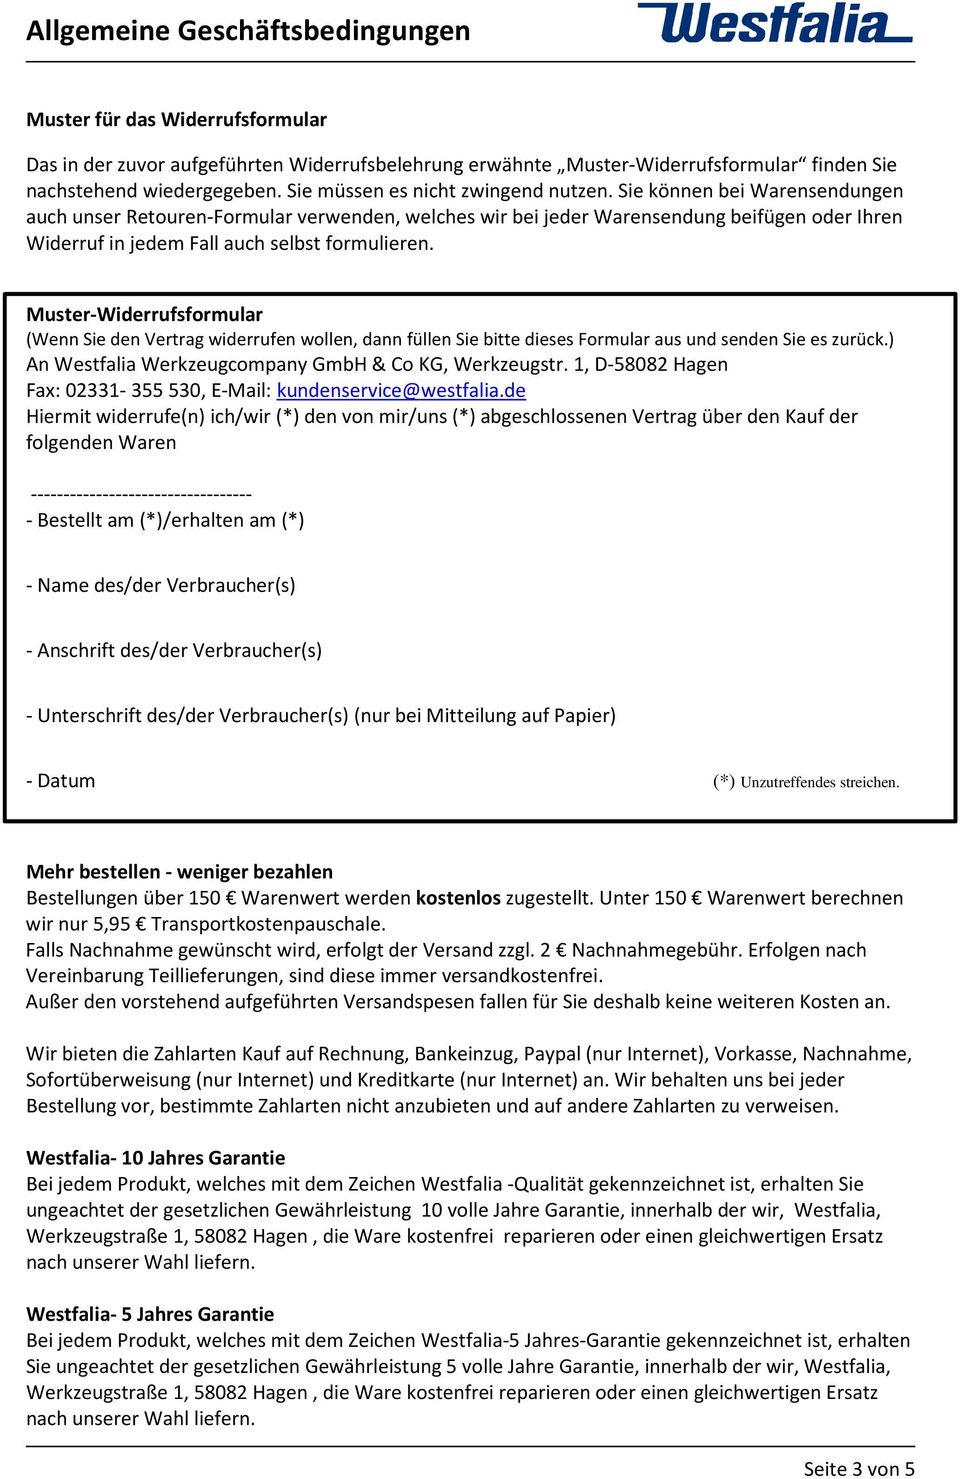 Muster-Widerrufsformular (Wenn Sie den Vertrag widerrufen wollen, dann füllen Sie bitte dieses Formular aus und senden Sie es zurück.) An Westfalia Werkzeugcompany GmbH & Co KG, Werkzeugstr.